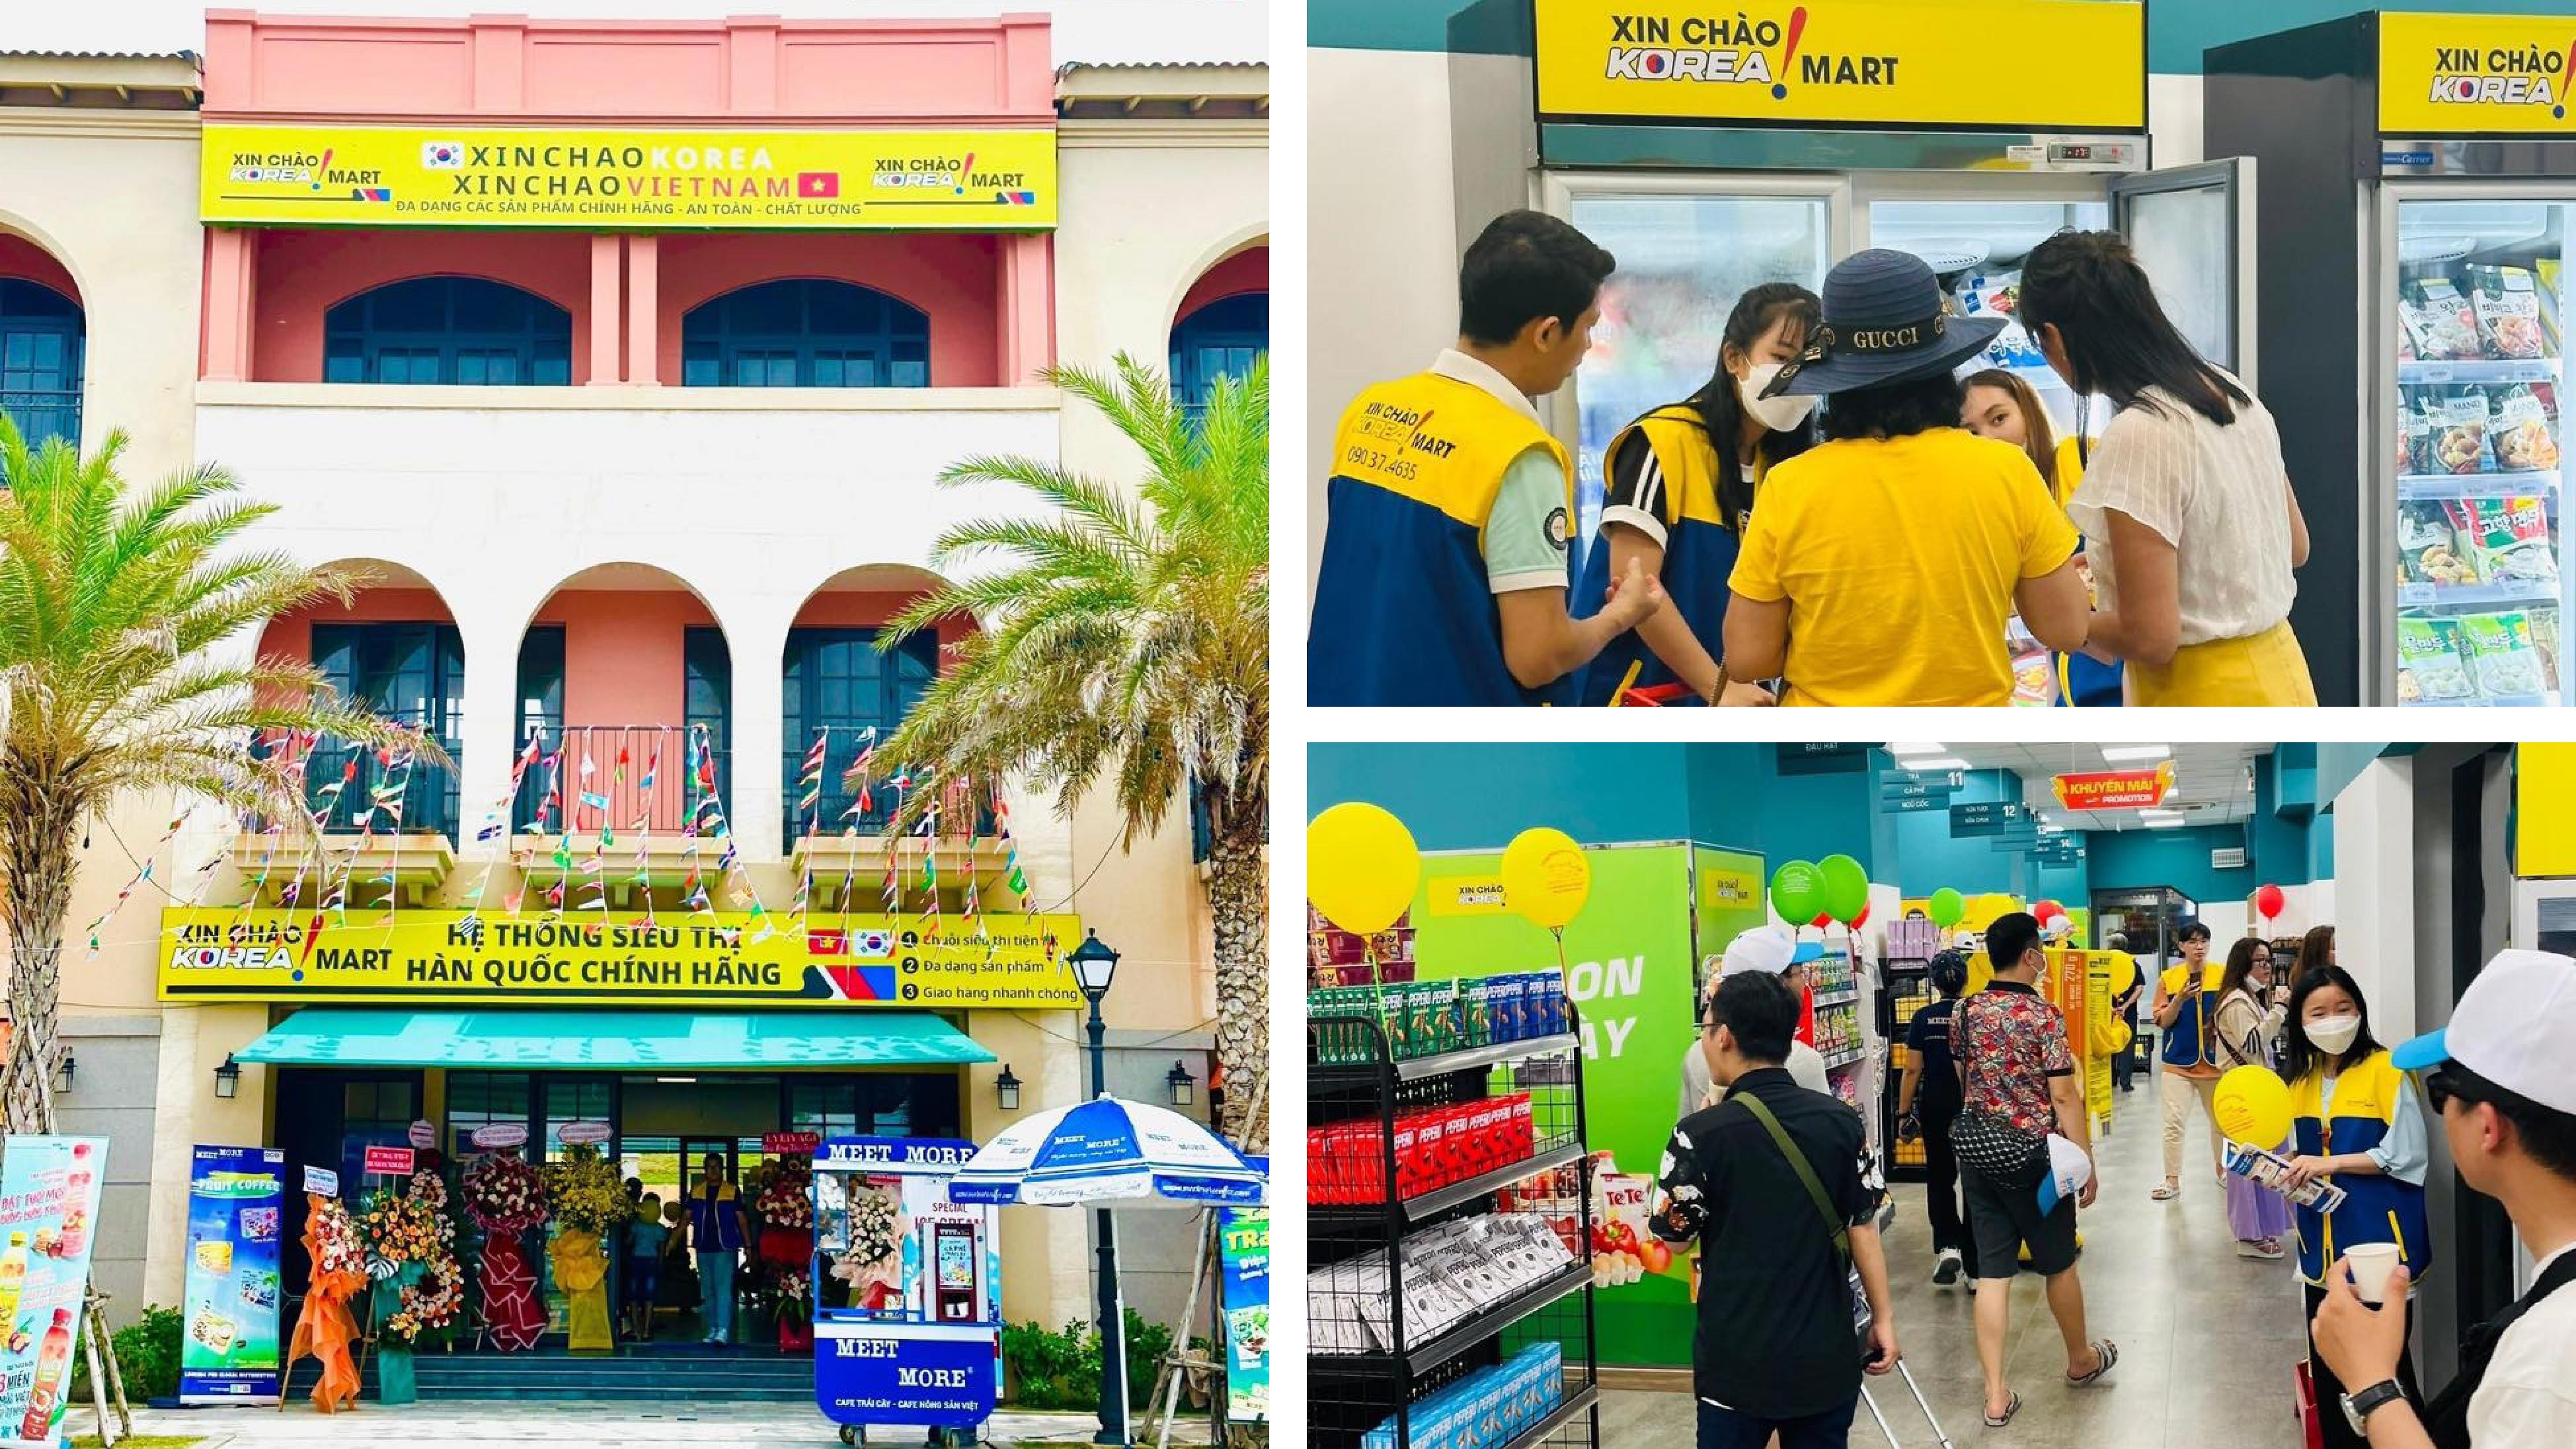 Hệ thống siêu thị Xin chào Korea Mart tại NovaWorld Phan Thiet thu hút cư dân, du khách mua sắm.